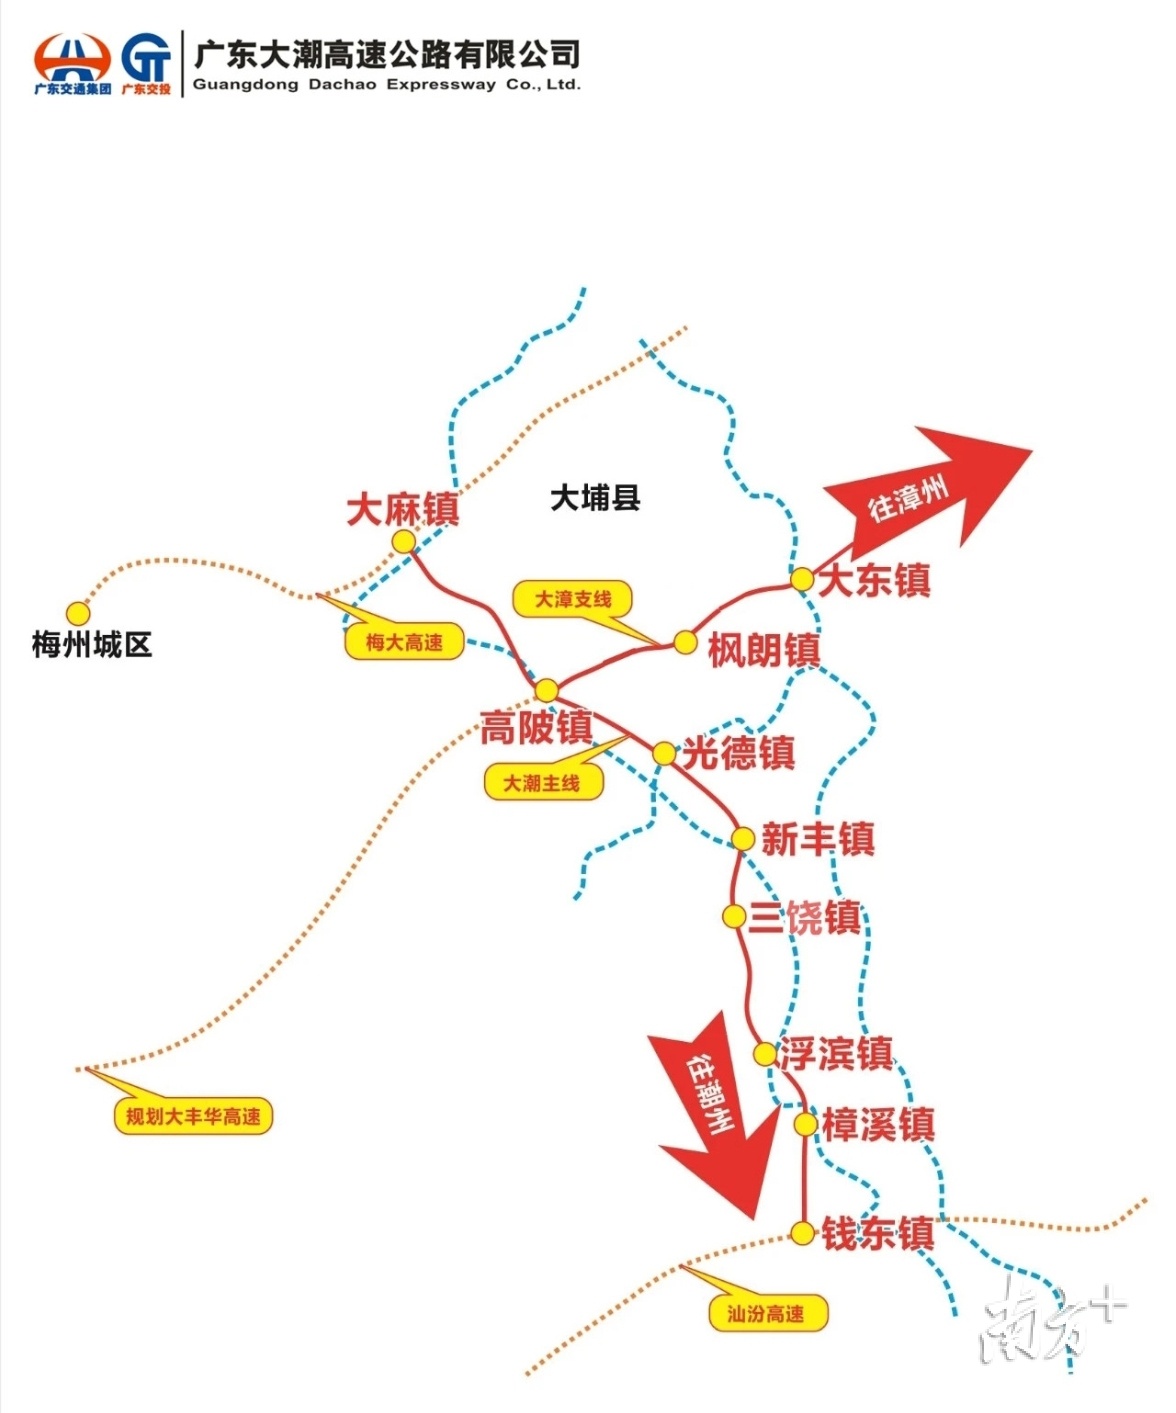 潮汕环线高速地图图片